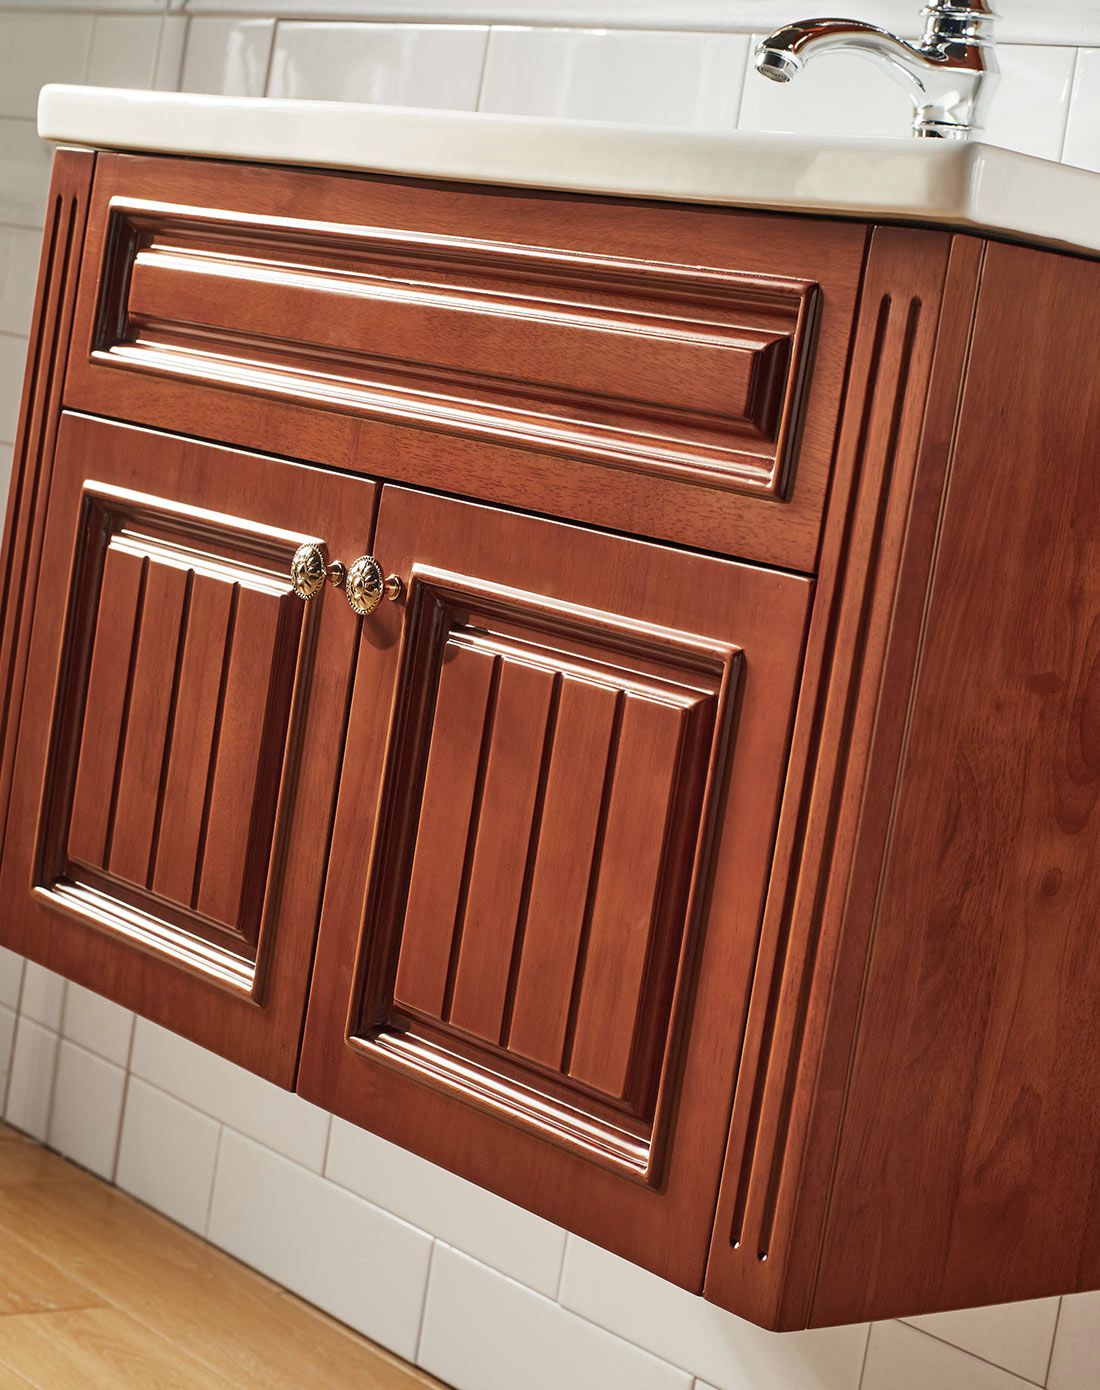 现代美式栗子色实木浴室柜带龙头套餐